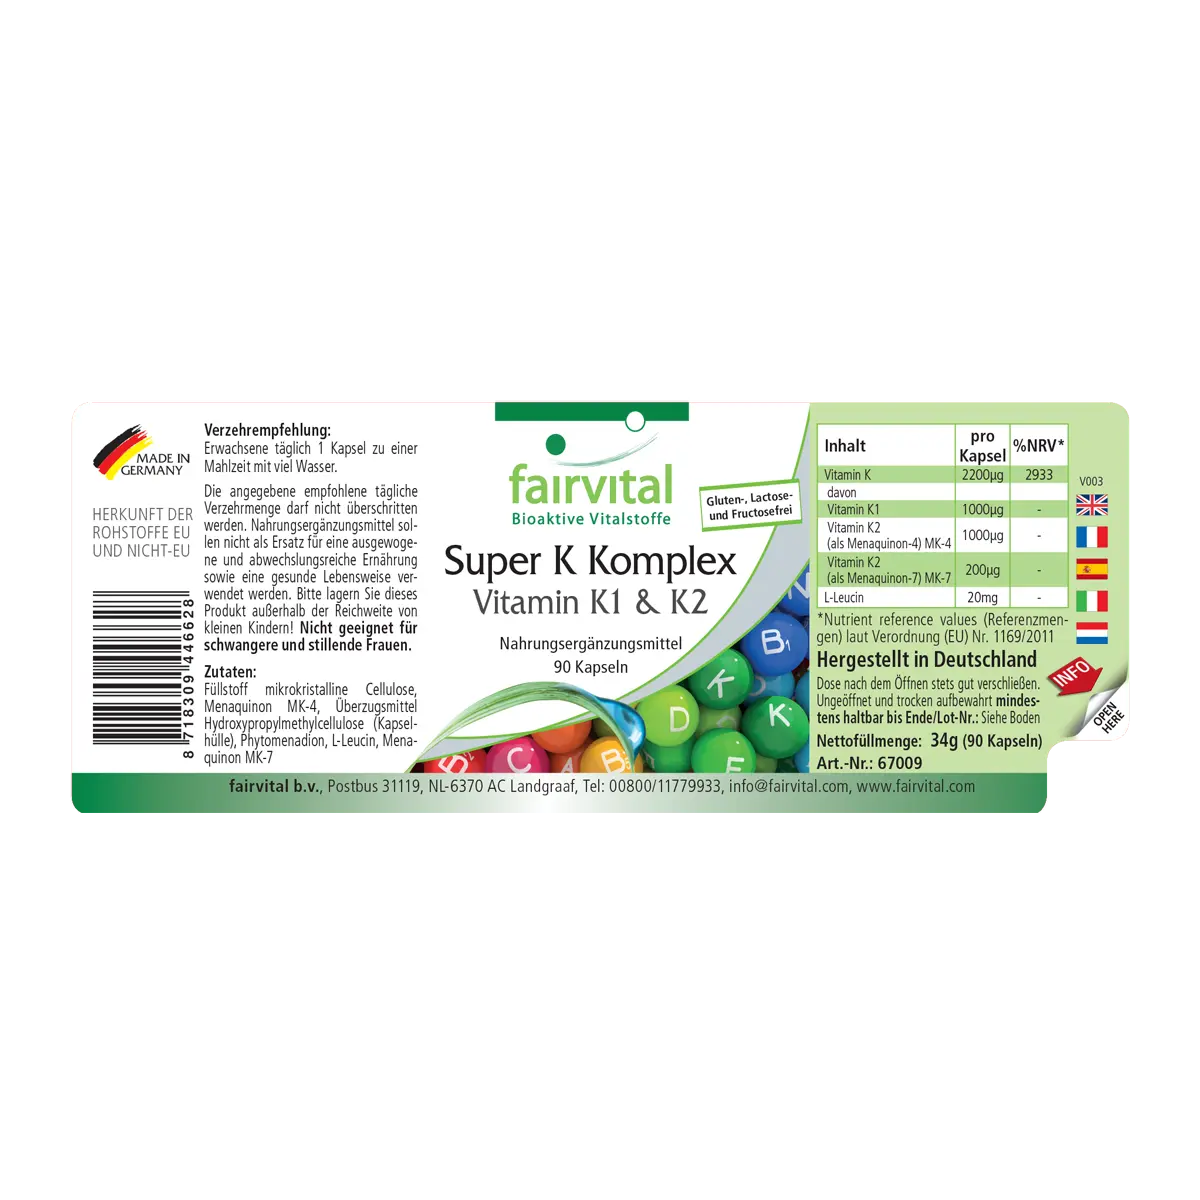 Super K Komplex Vitamin K1 und K2